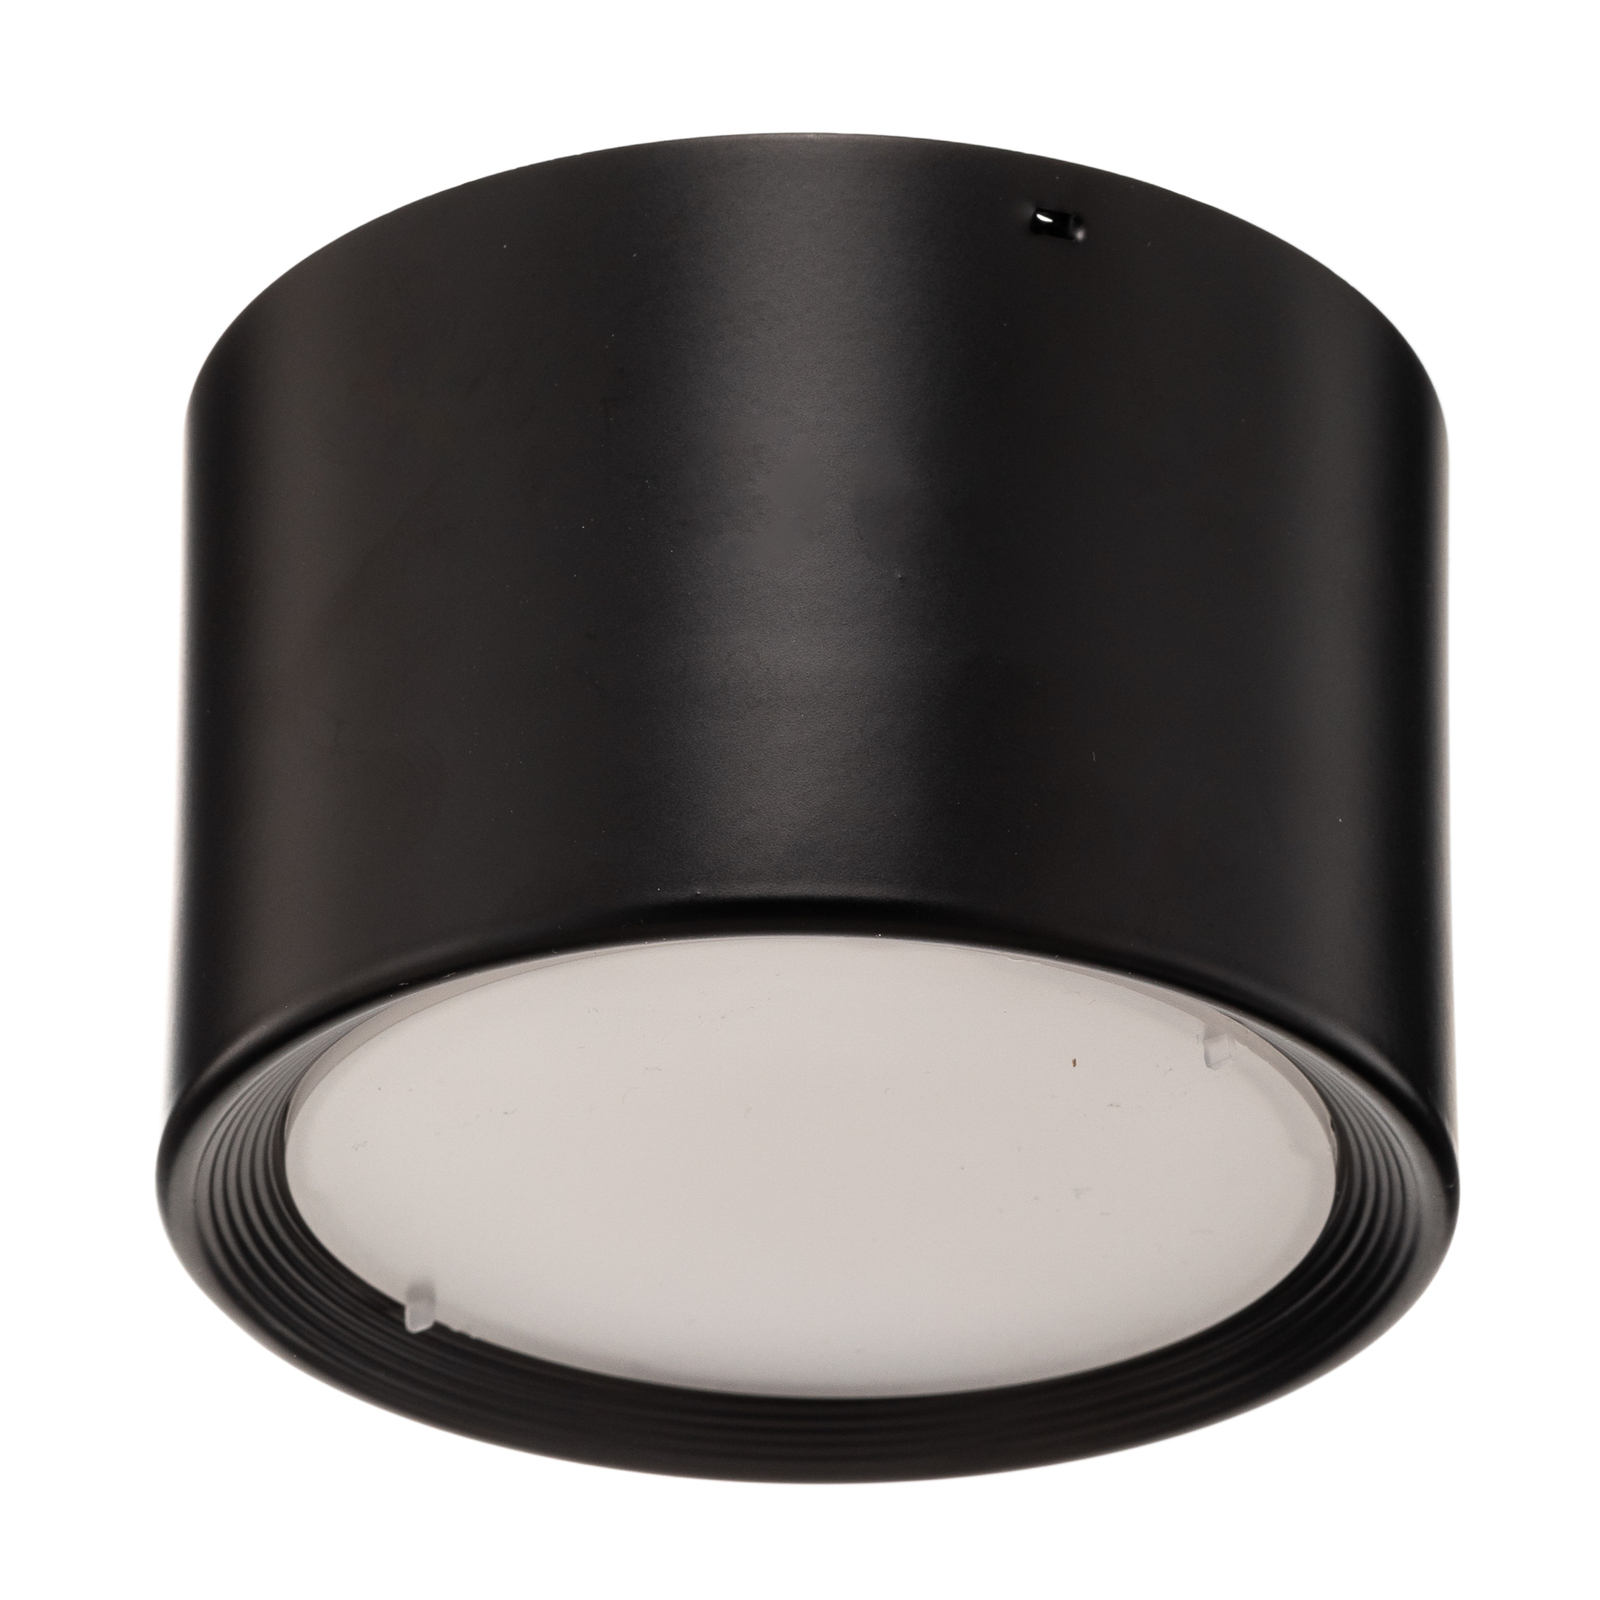 Juodos spalvos "Ita" LED šviestuvas su difuzoriumi, Ø 10 cm